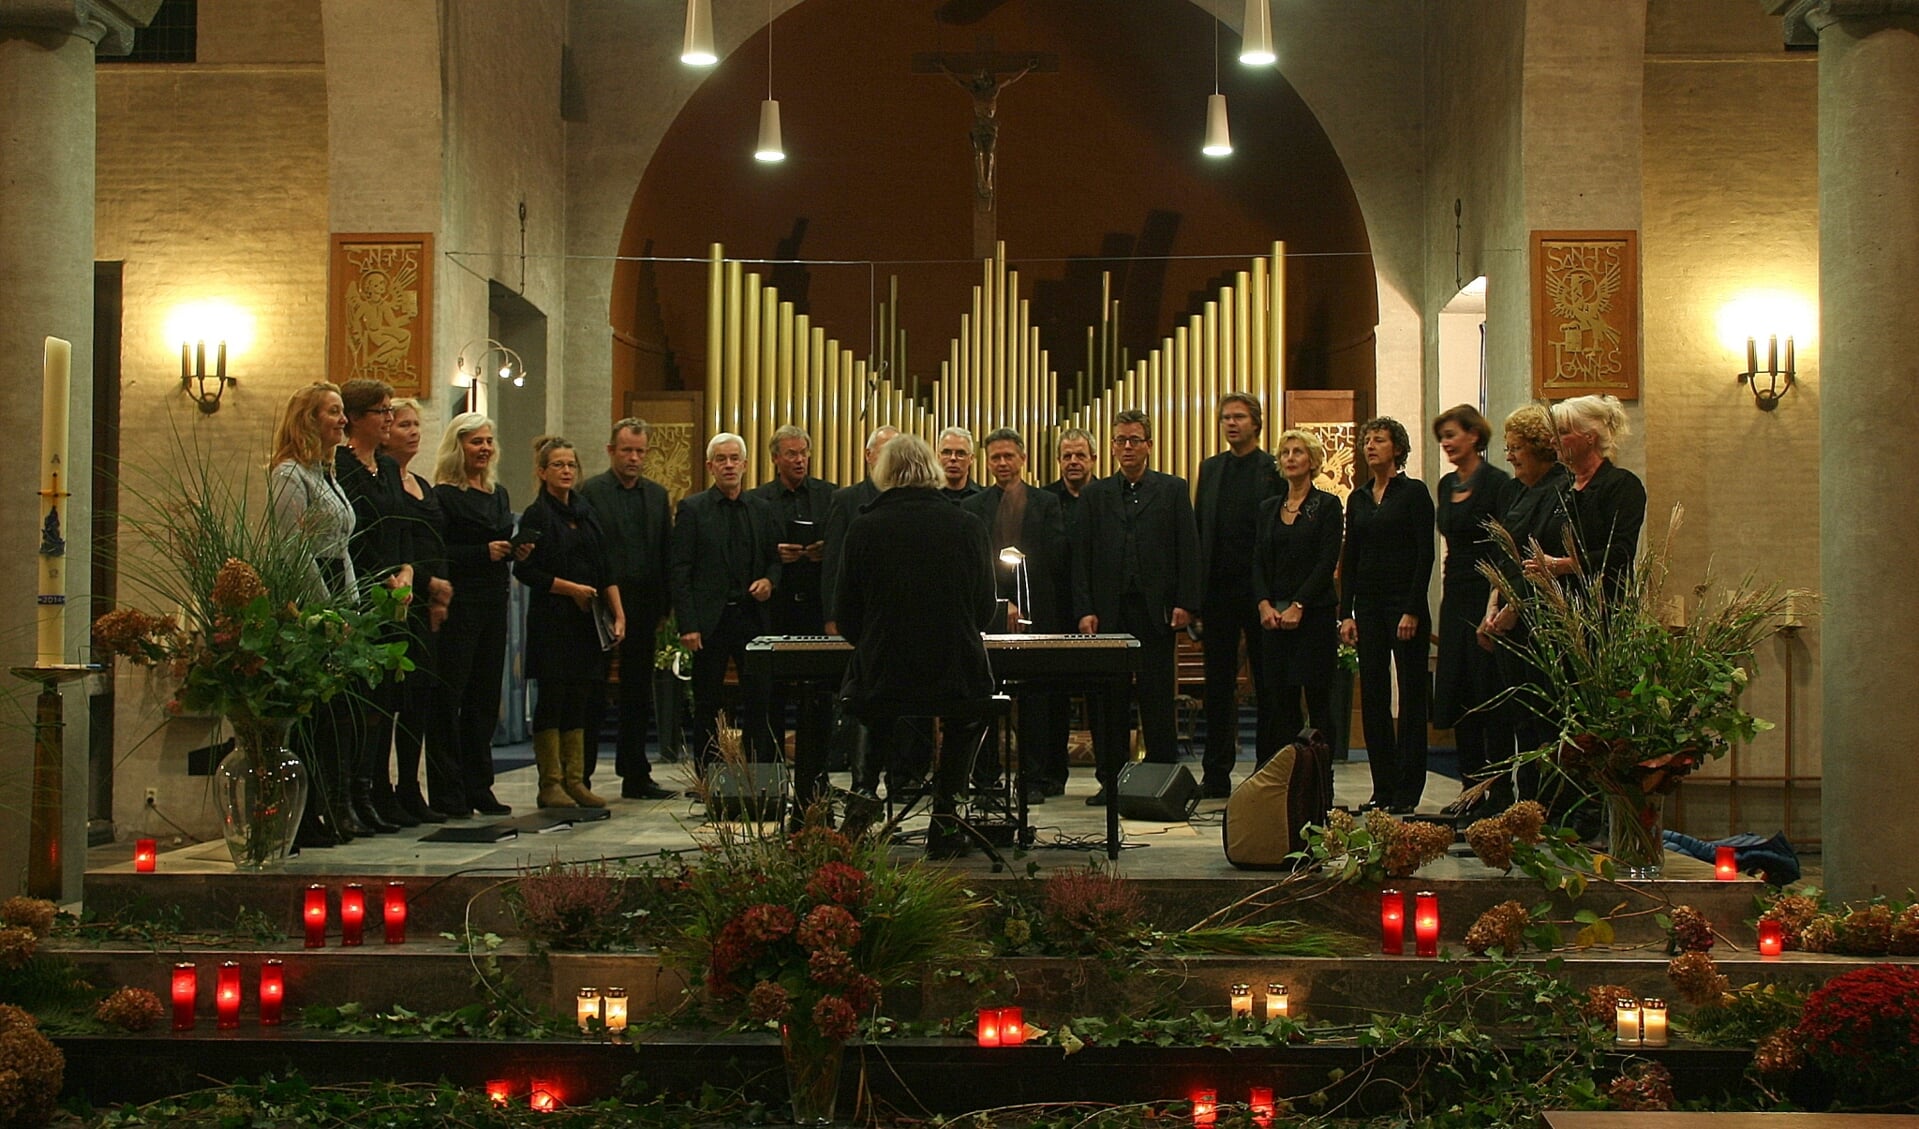 het koor CantAnimus tijdens een eerdere uitvoering. (foto: CantAnimus)